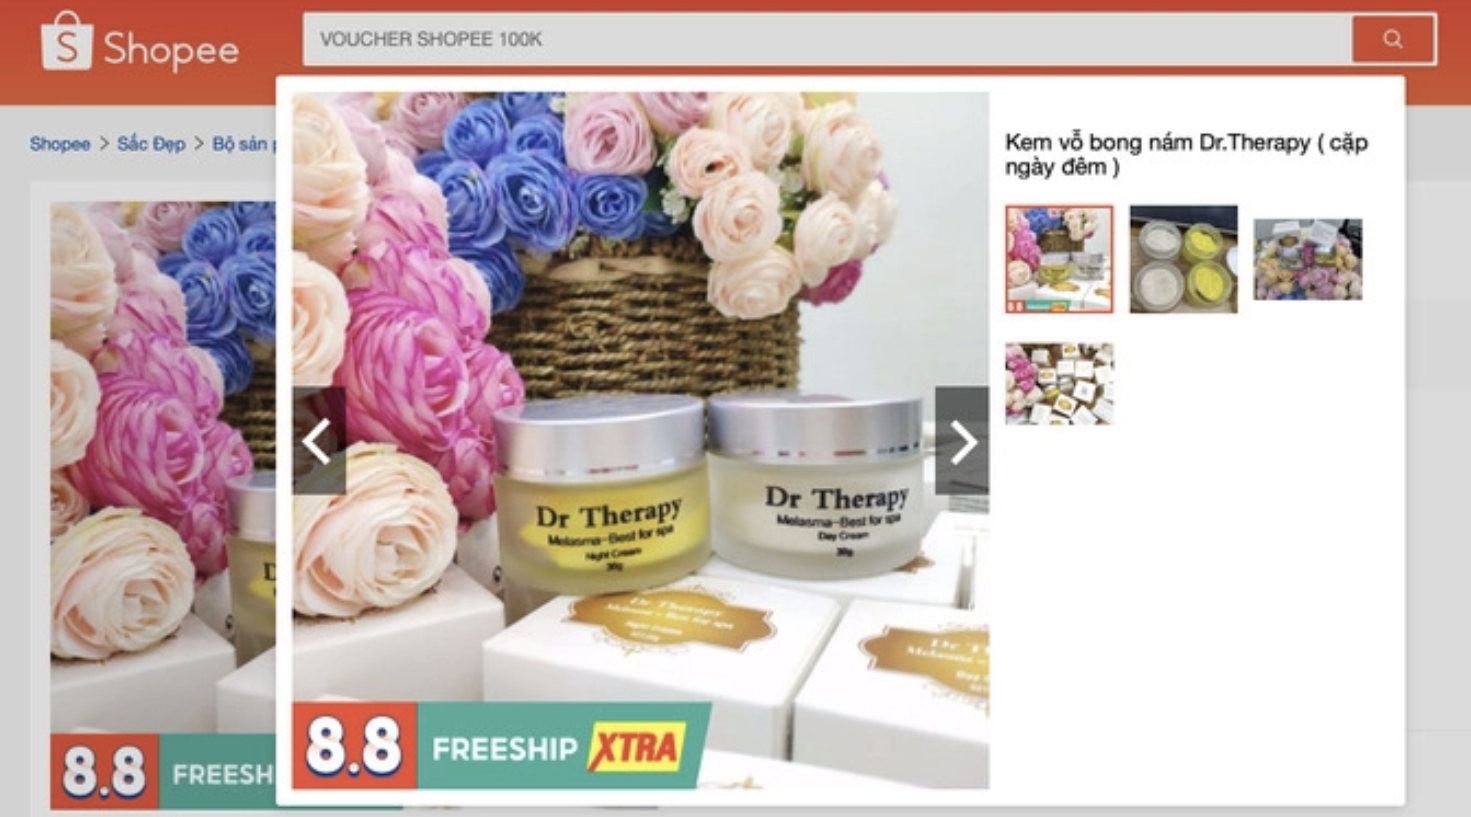 Hình ảnh sản phẩm mỹ phẩm Dr Therapy Melasma - Best for spa Night cream trên sàn thương mại điện